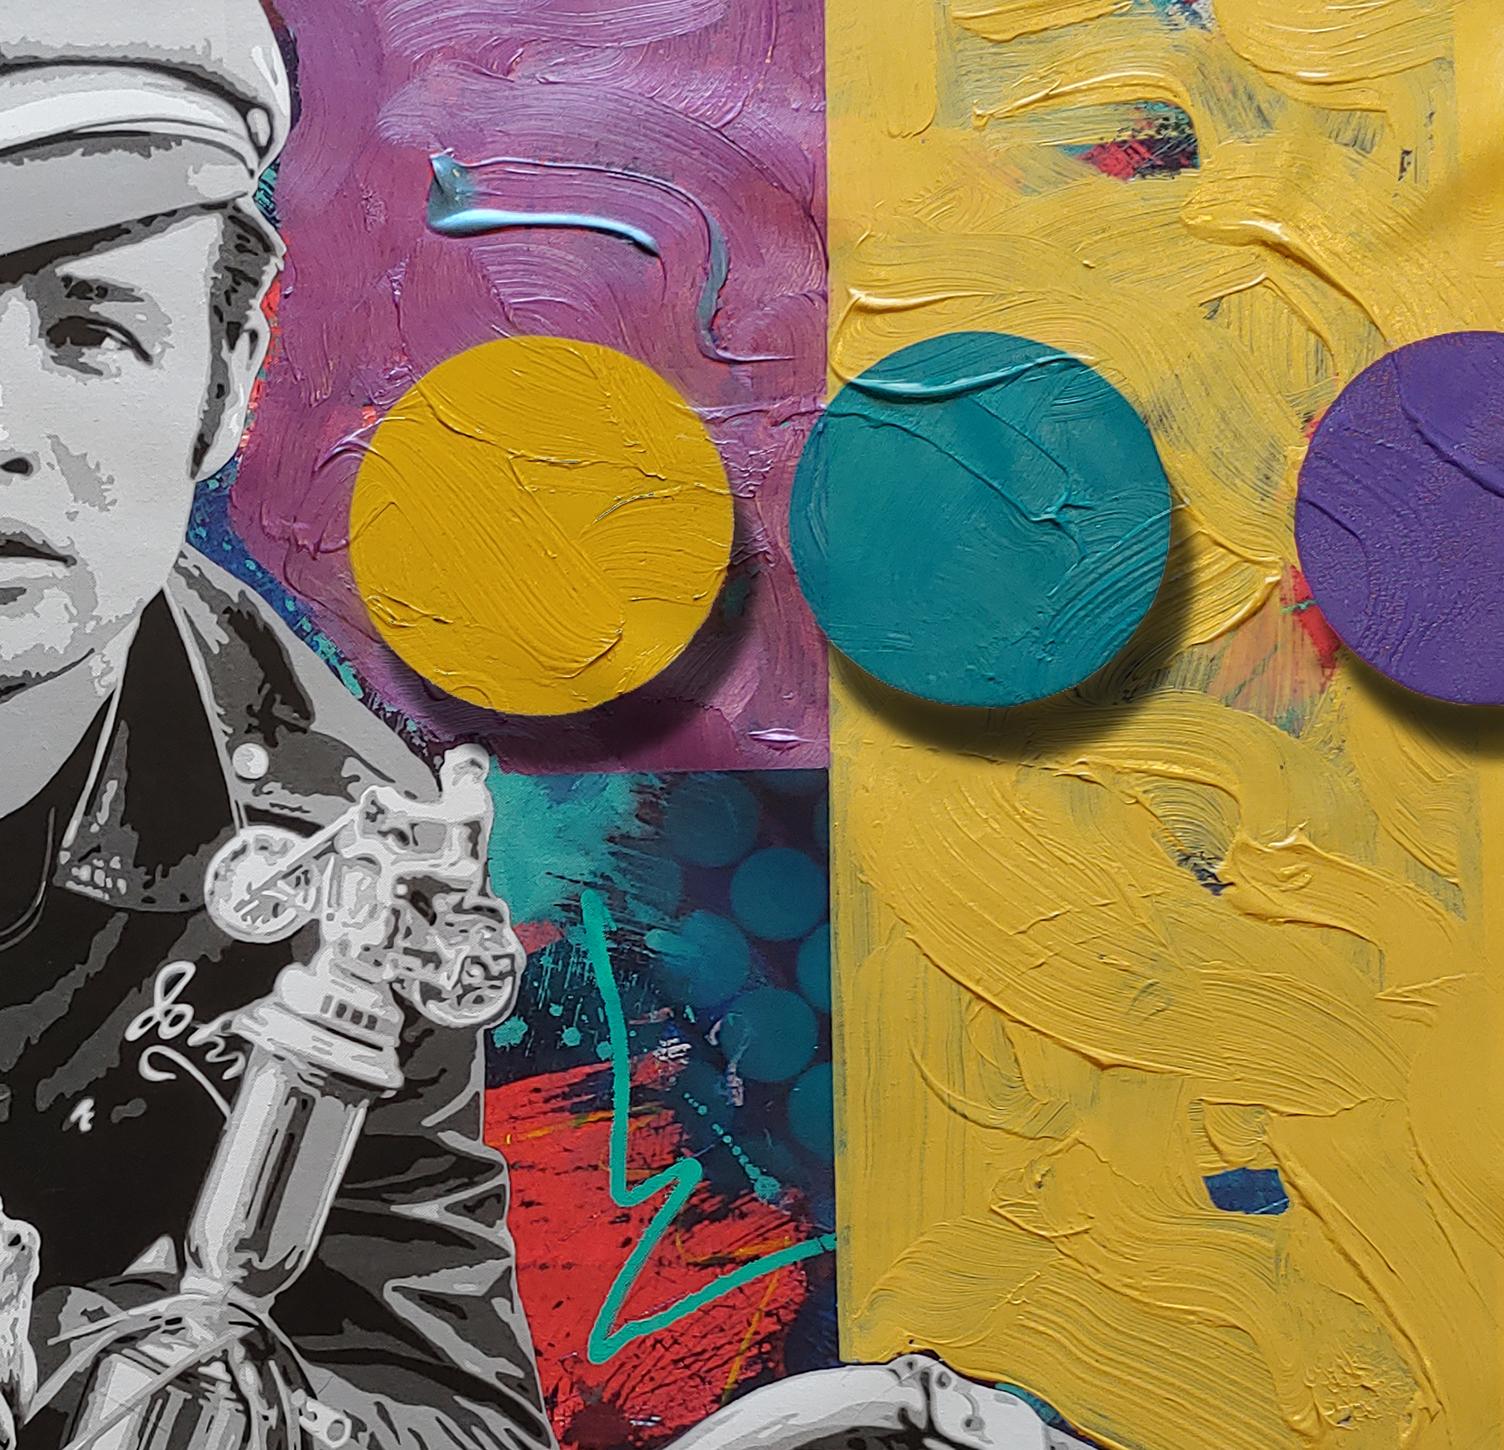 Peinture technique mixte, huile, acrylique, peinture à la bombe et encre d'archives Brando and G - Painting de Ceravolo